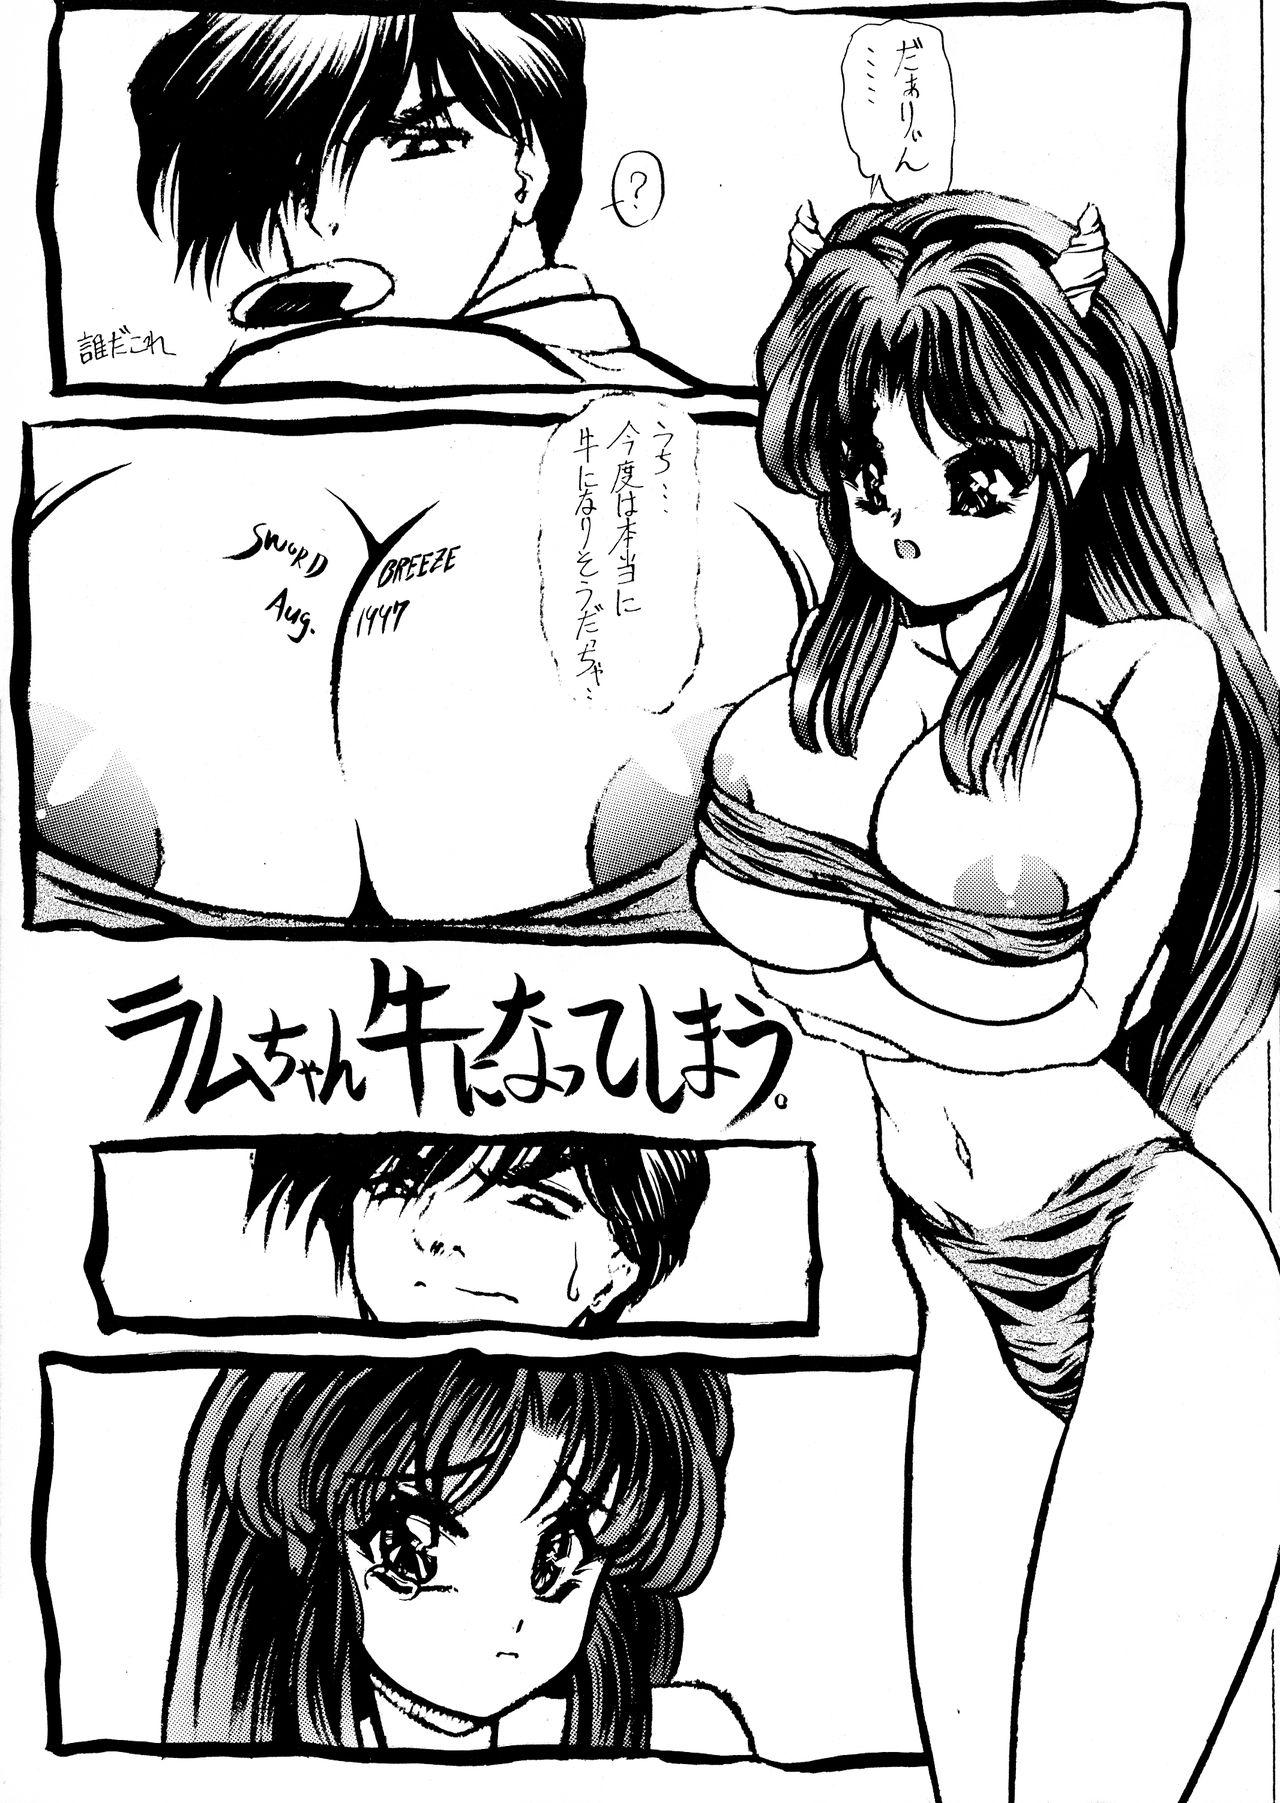 Buttfucking Imasugu Kimi o Buttobase. - Urusei yatsura Maison ikkoku Raw - Page 5